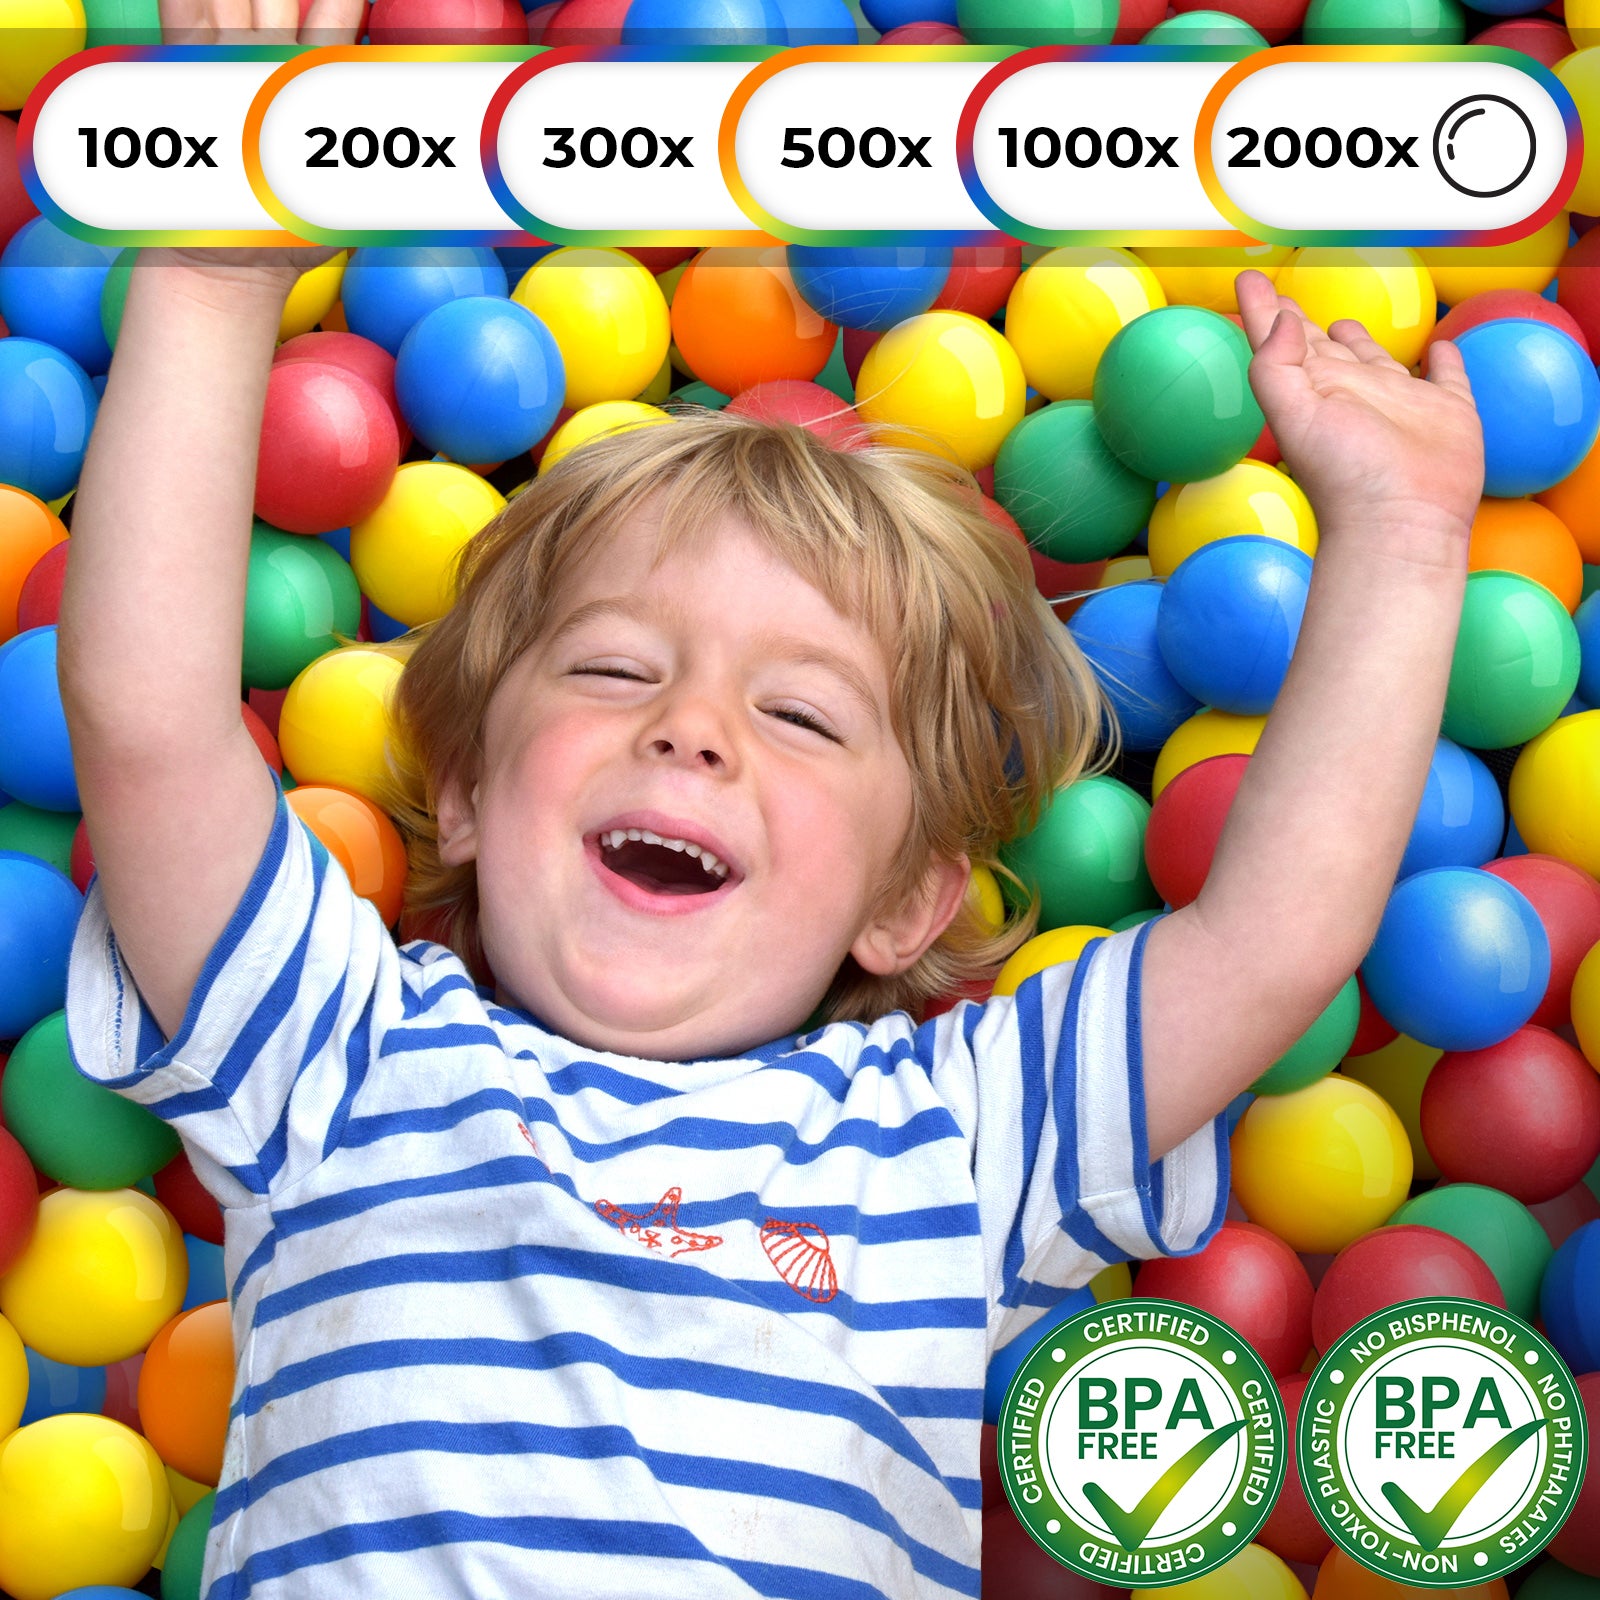 1200 Balles de Jeu en Plastique 5,5cm Set de Balles colorées pour